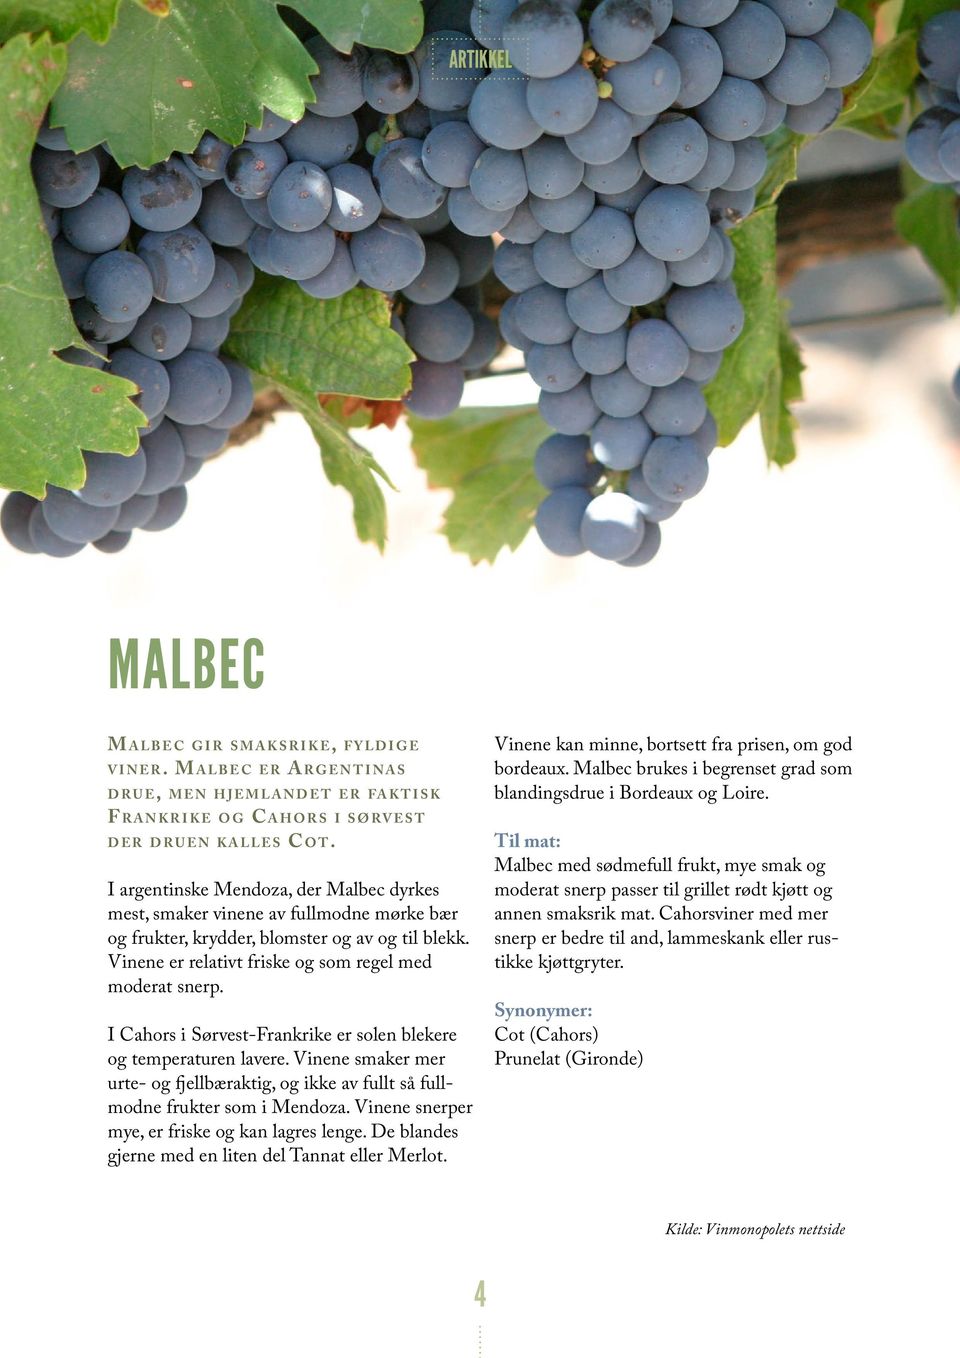 I argentinske Mendoza, der Malbec dyrkes mest, smaker vinene av fullmodne mørke bær og frukter, krydder, blomster og av og til blekk. Vinene er relativt friske og som regel med moderat snerp.